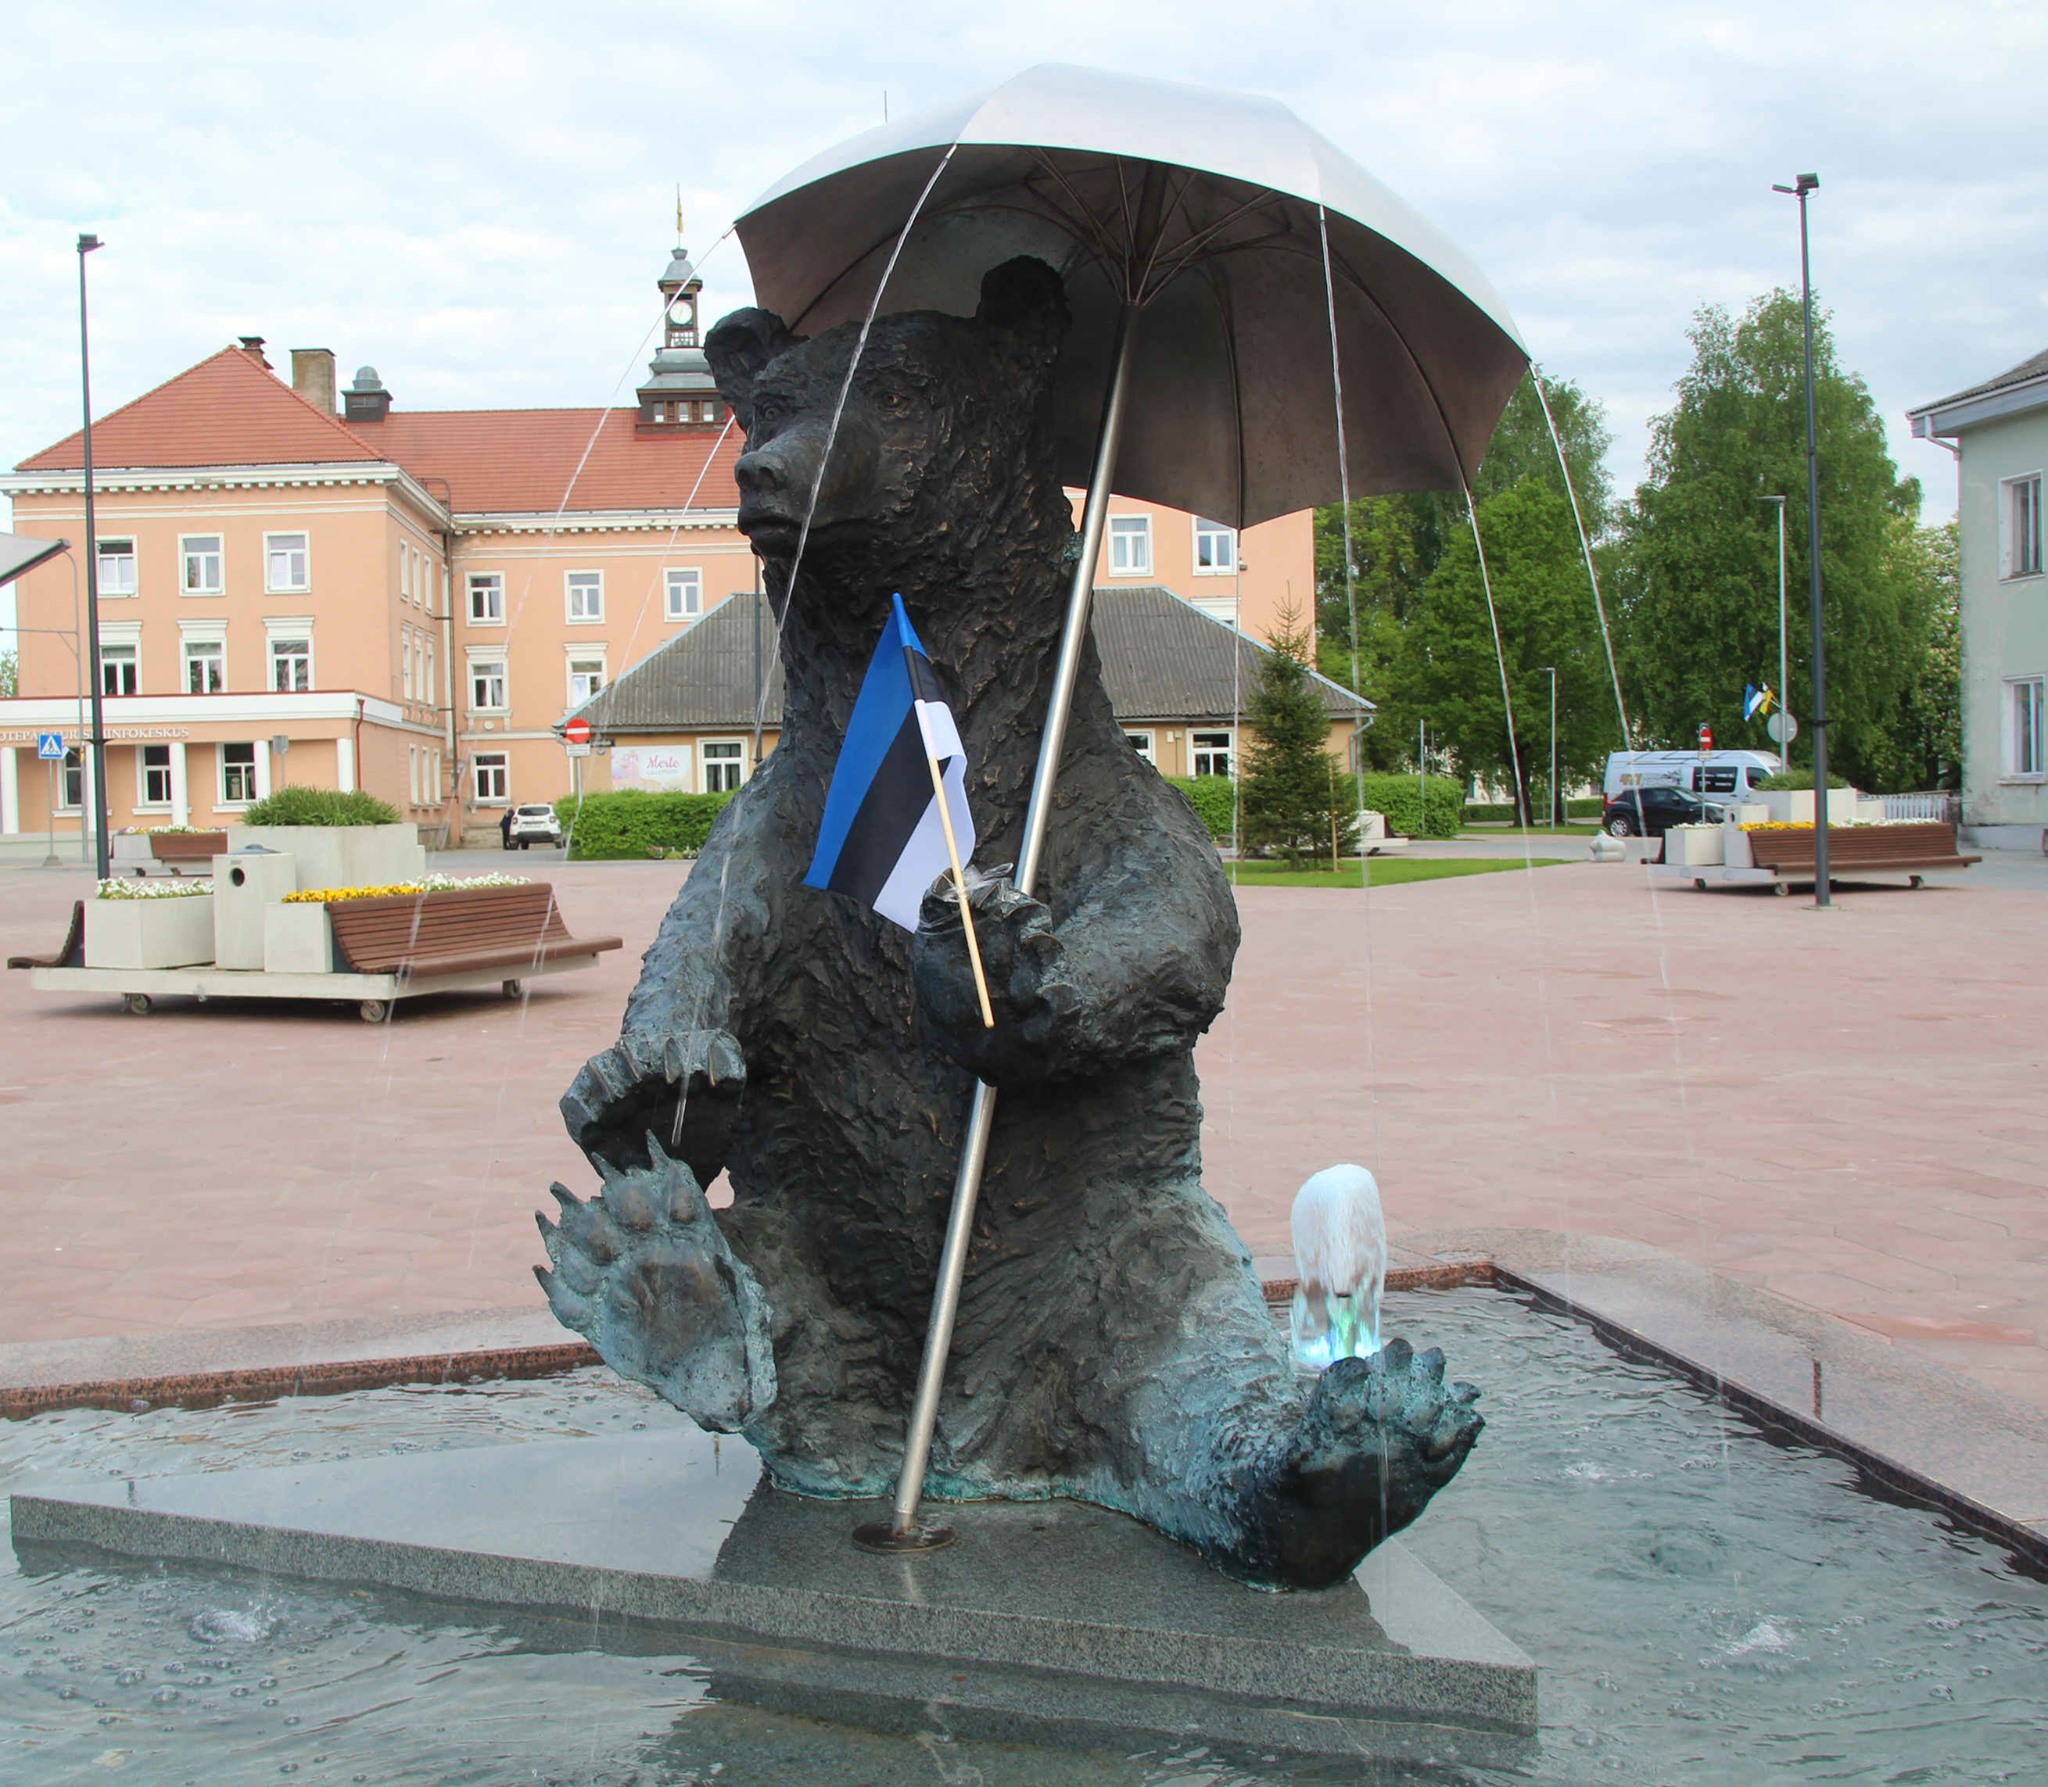 Otepää tähistab Eesti lipu õnnistamise 137. aastapäeva. Head Eesti lipu päeva!